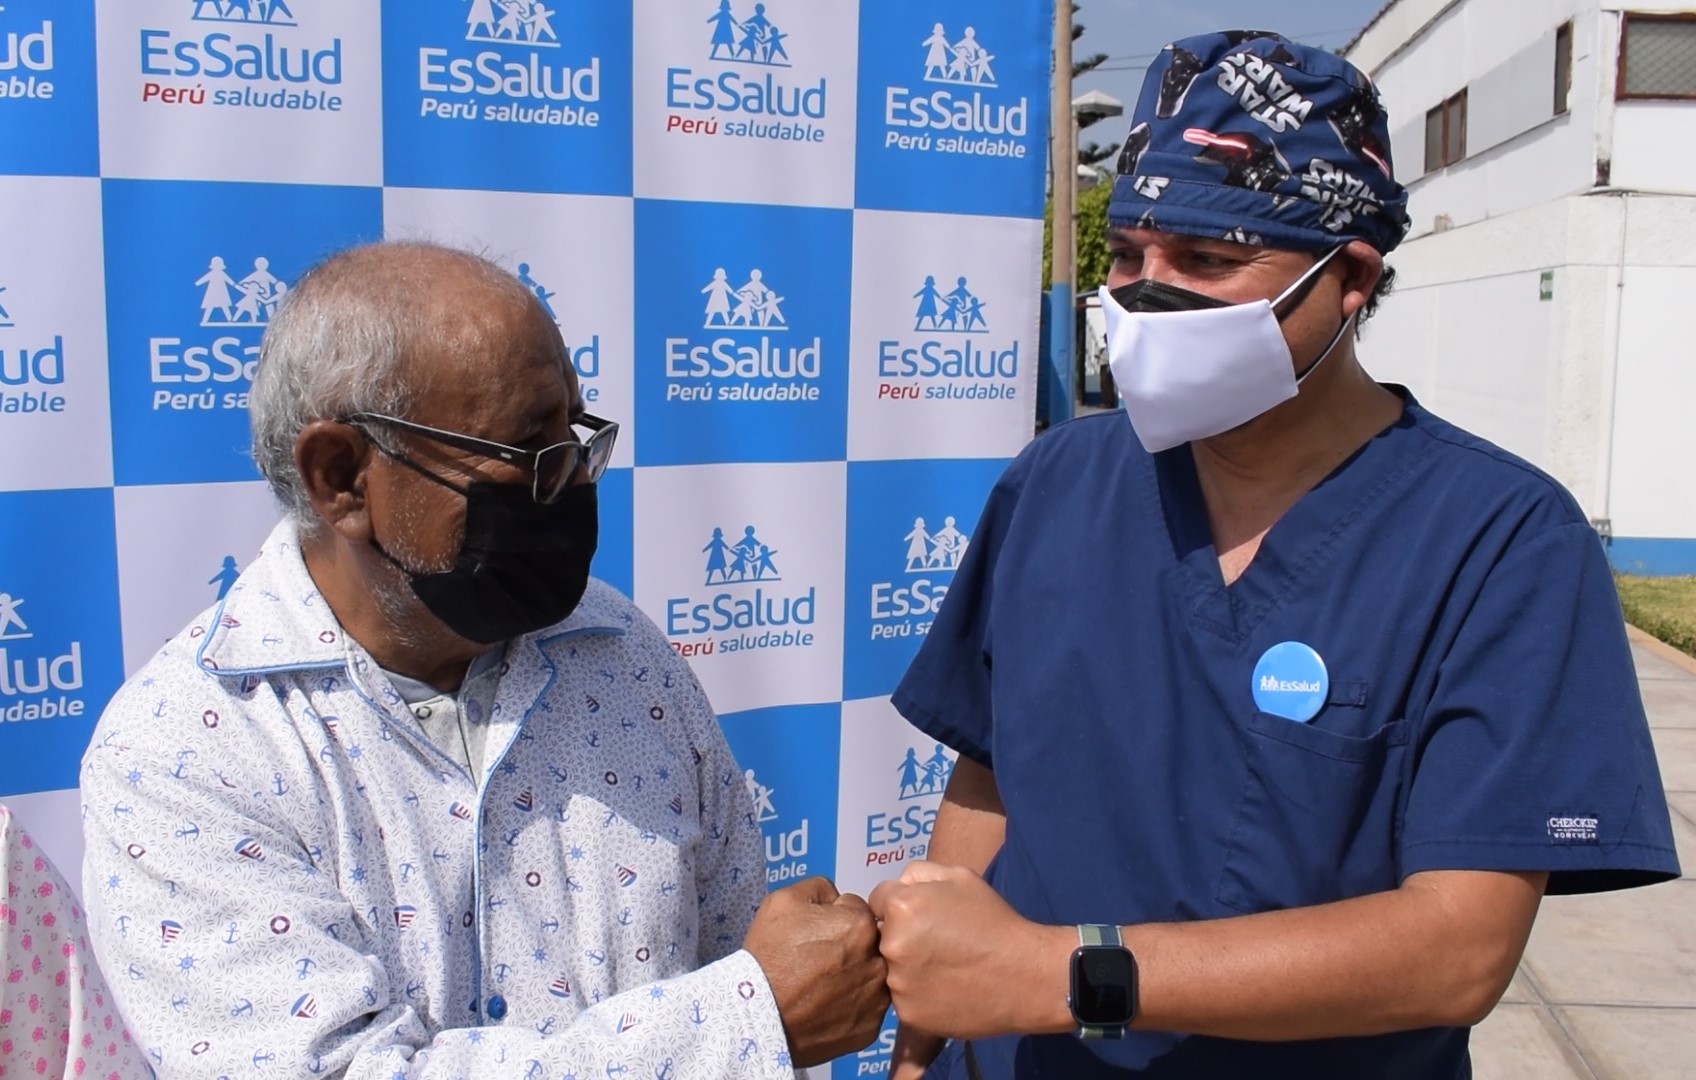 Essalud - Medicos de EsSalud salvan vida de madre y adulto mayor con exitosos trasplantes renales